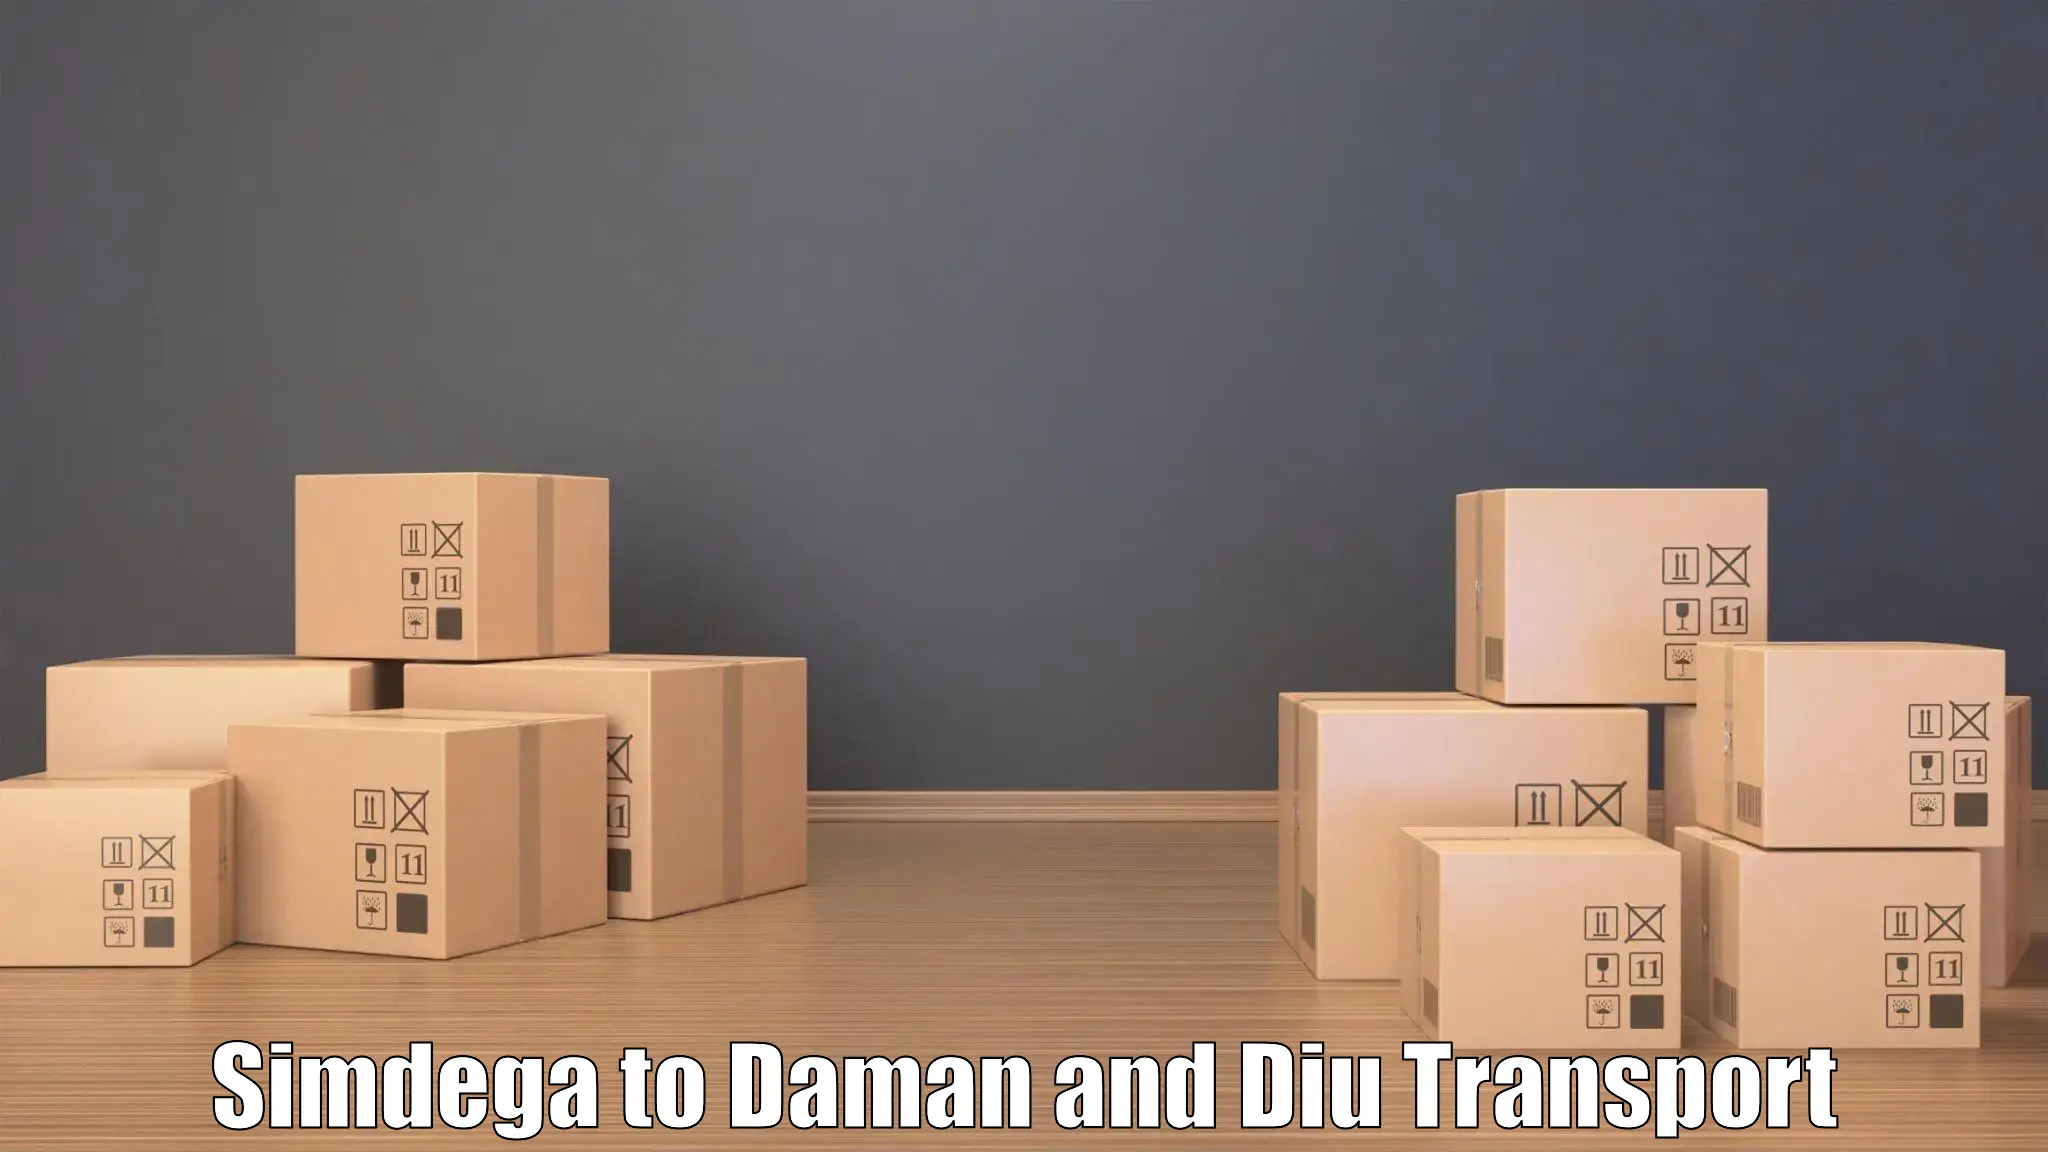 Transport in sharing Simdega to Daman